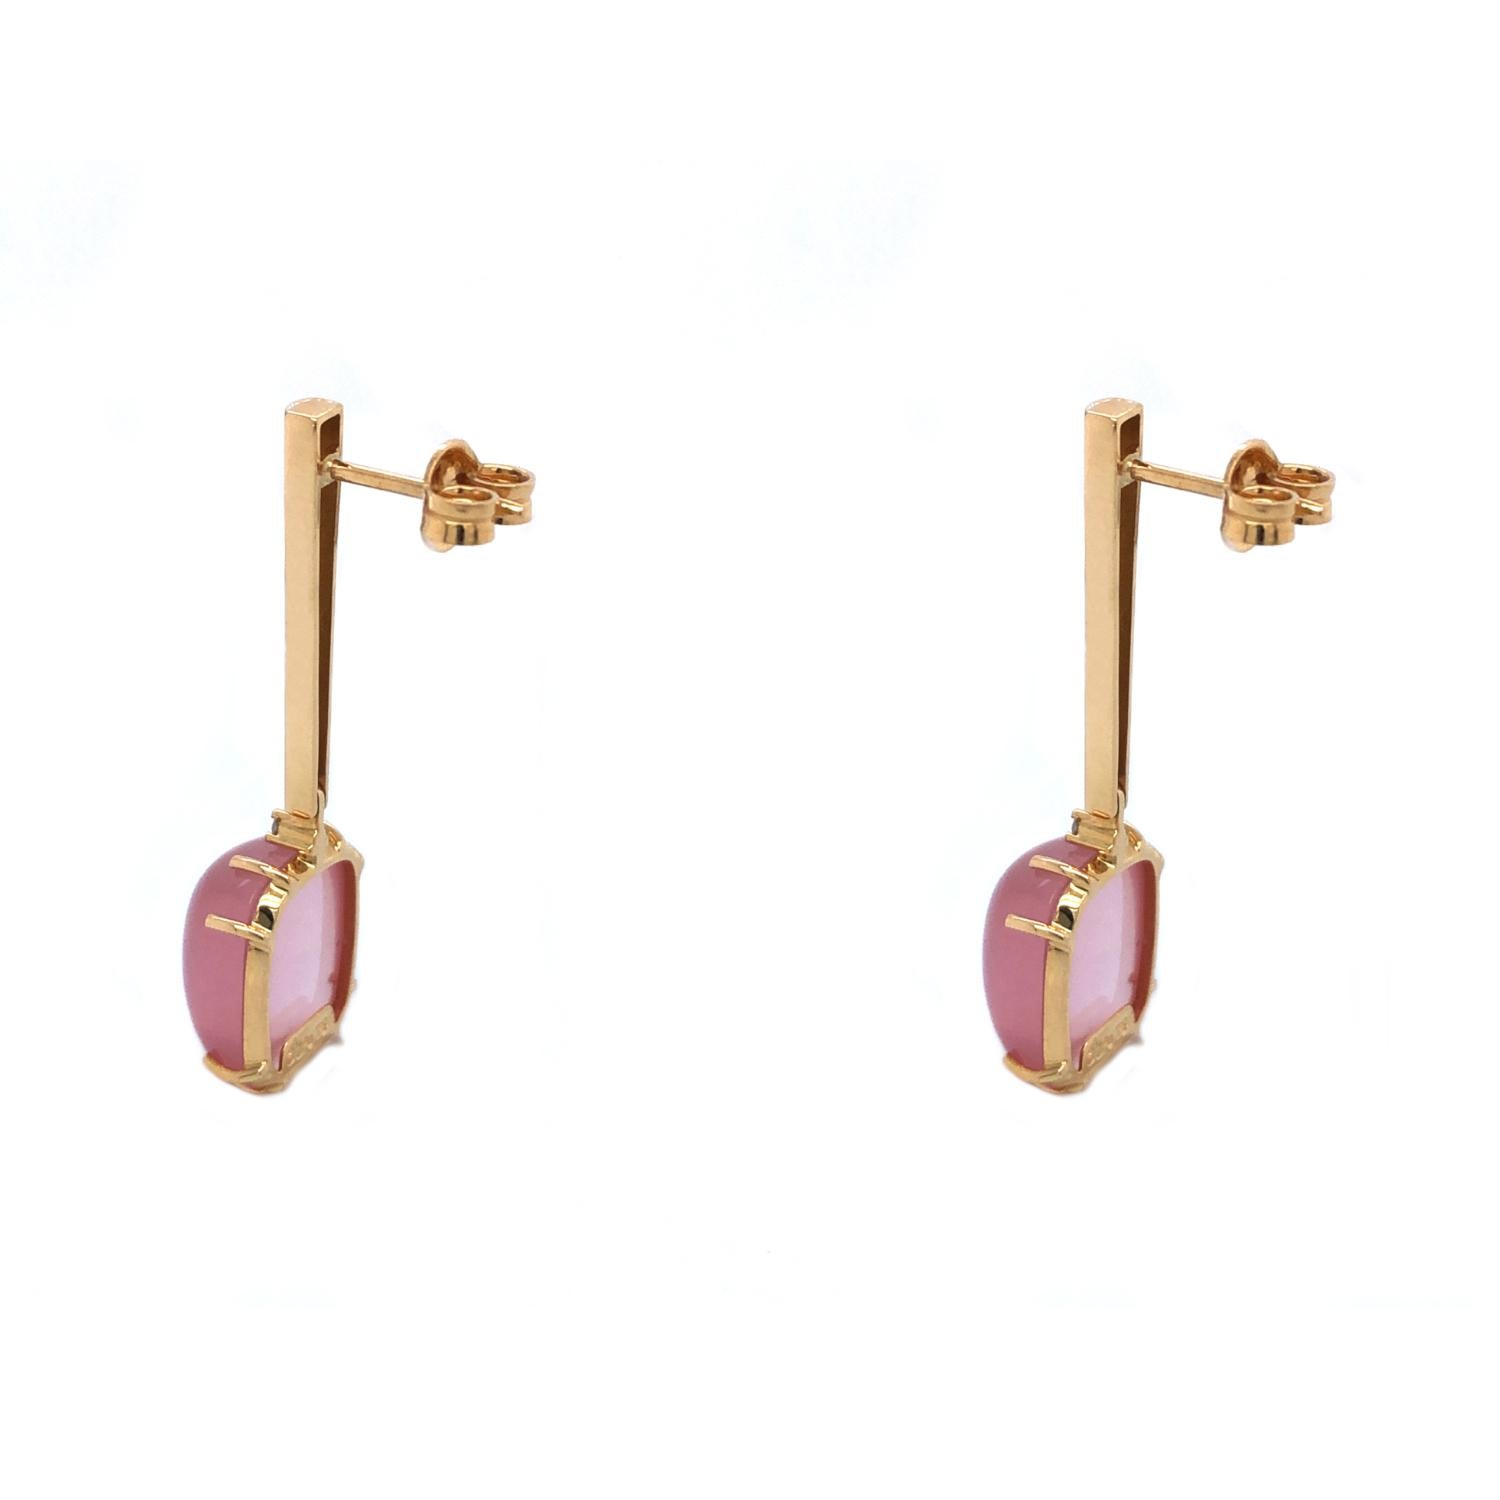 Unsere beliebten Pendel-Ohrringe jetzt mit atemberaubenden Rosenquarz-Edelsteinen und Diamanten.

MATERIALIEN:

- Ohrringe aus 18k massivem Gold

-Ein Paar 1,5 mm große Diamanten der Farbe G und Reinheit VS-2  

- 2 natürliche brasilianische